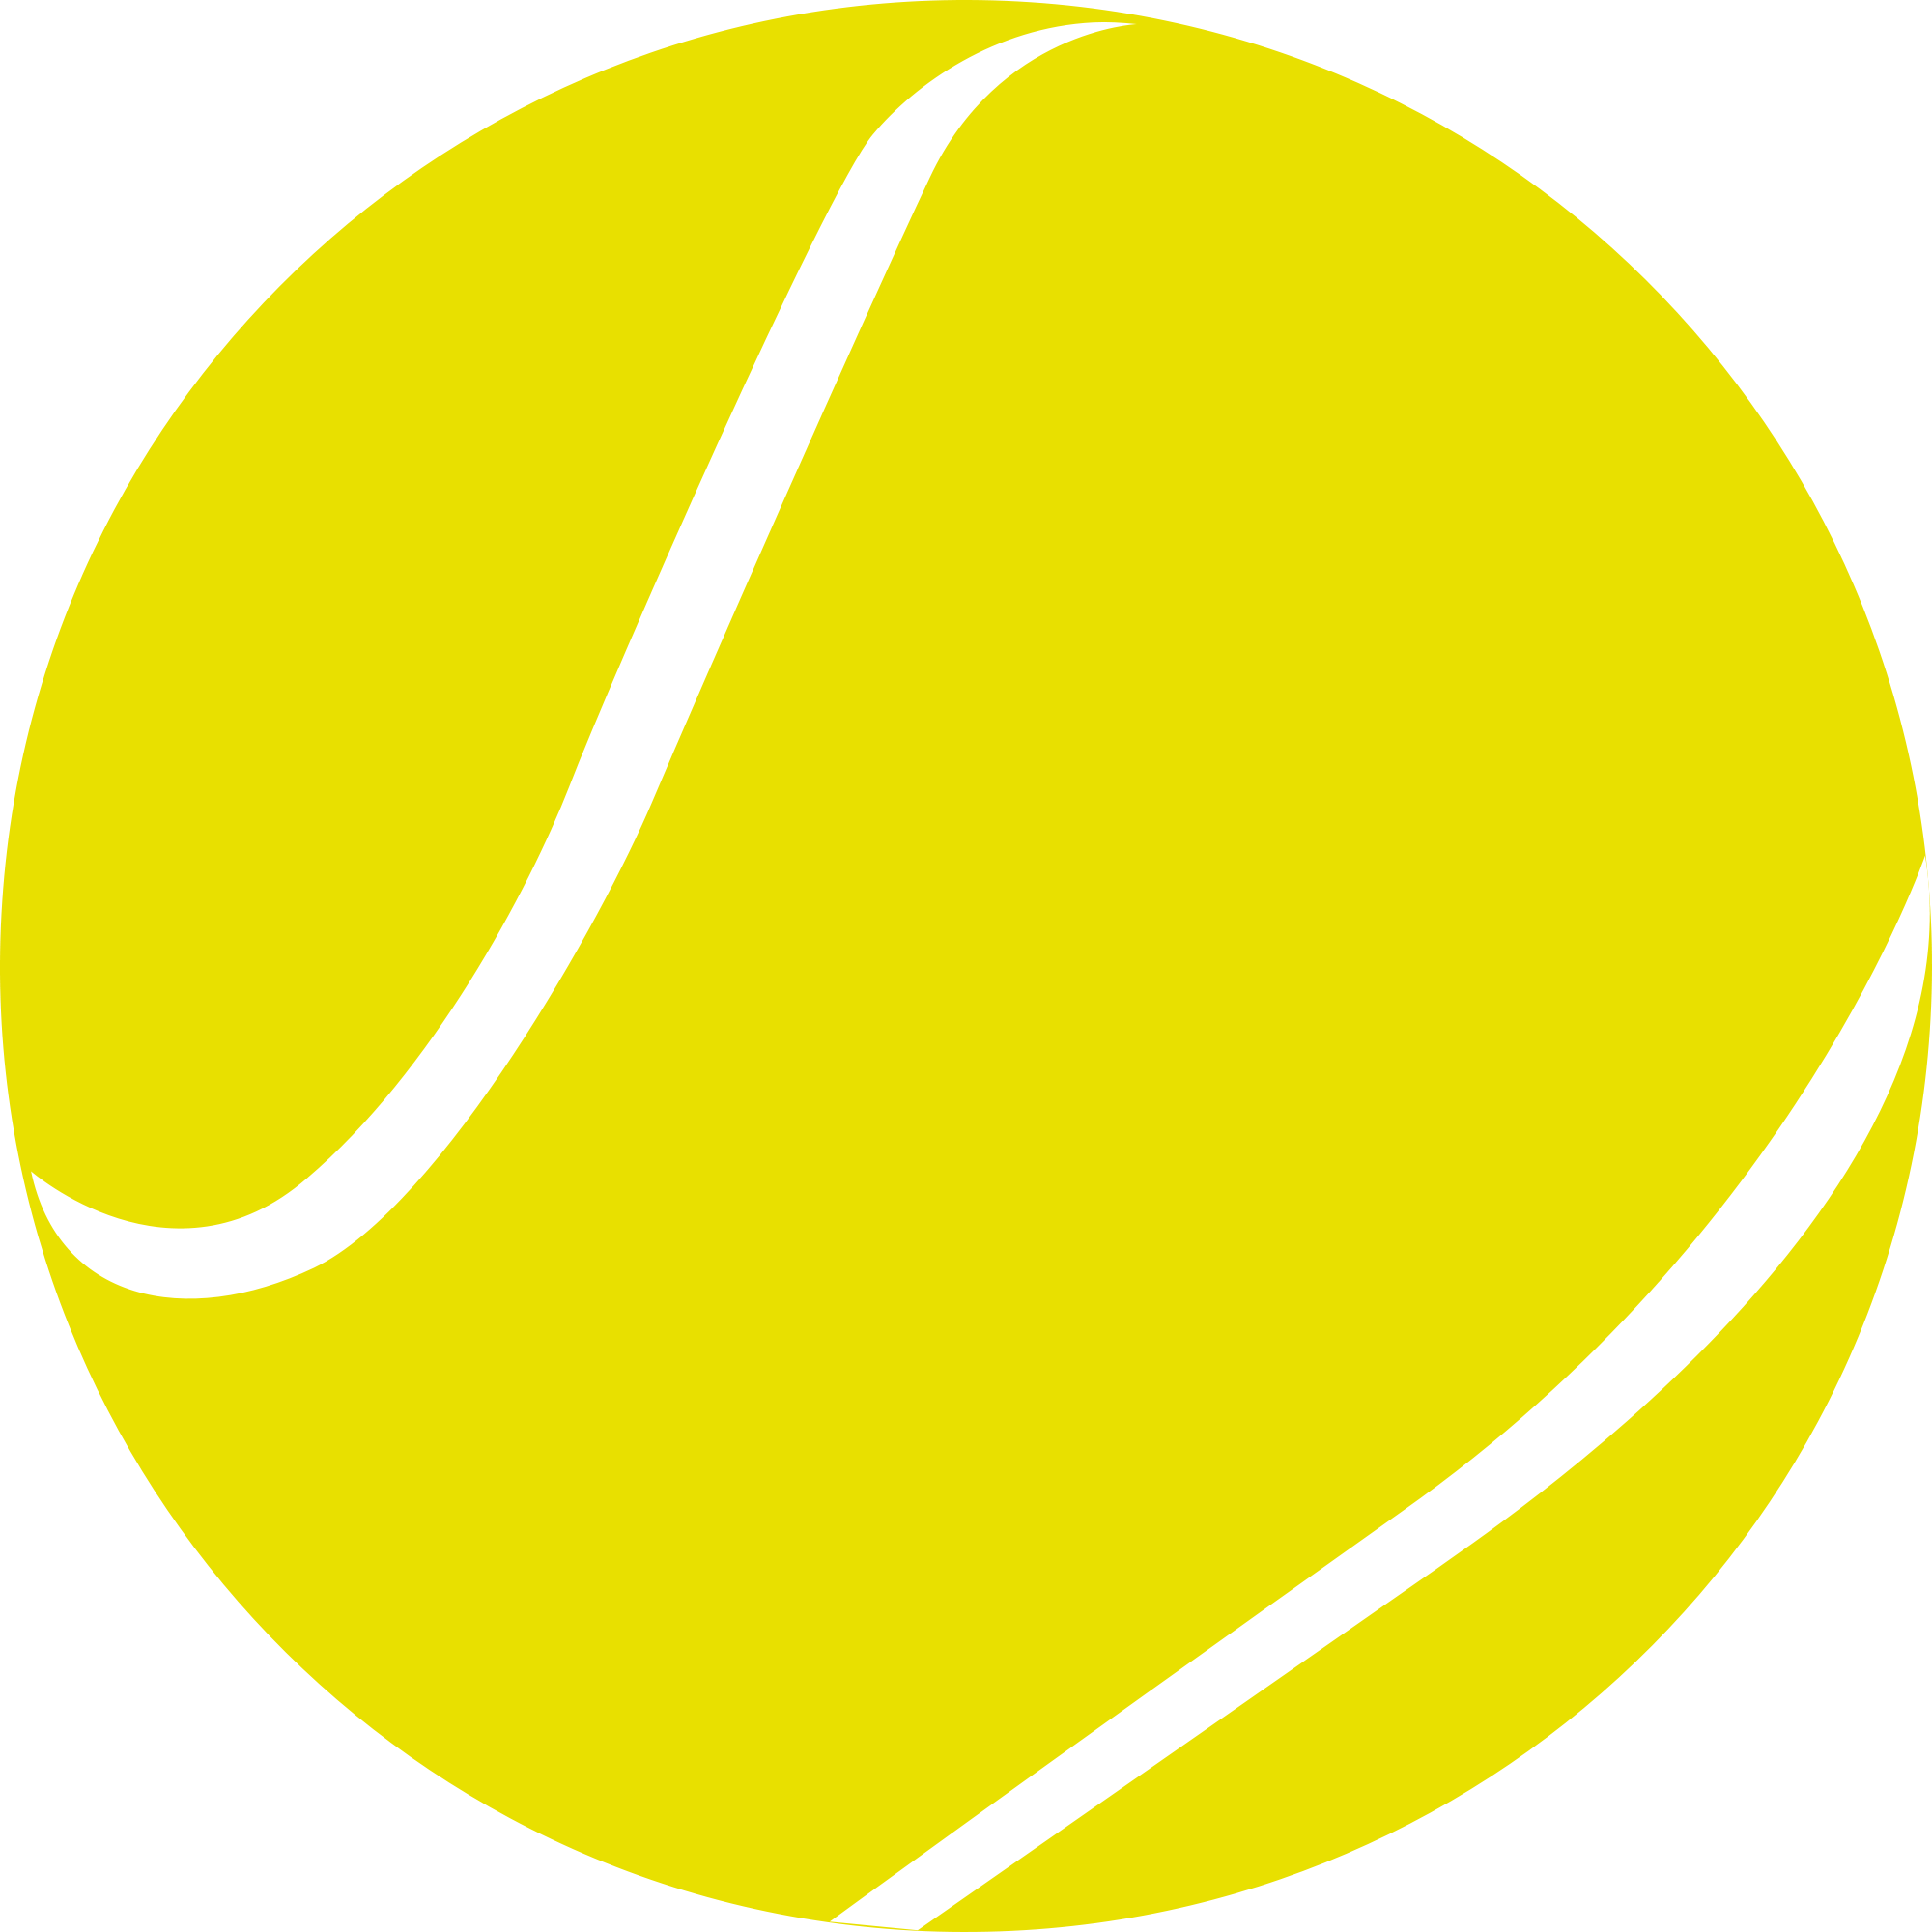 Tennisball-PNG-Bild mit transparentem Hintergrund